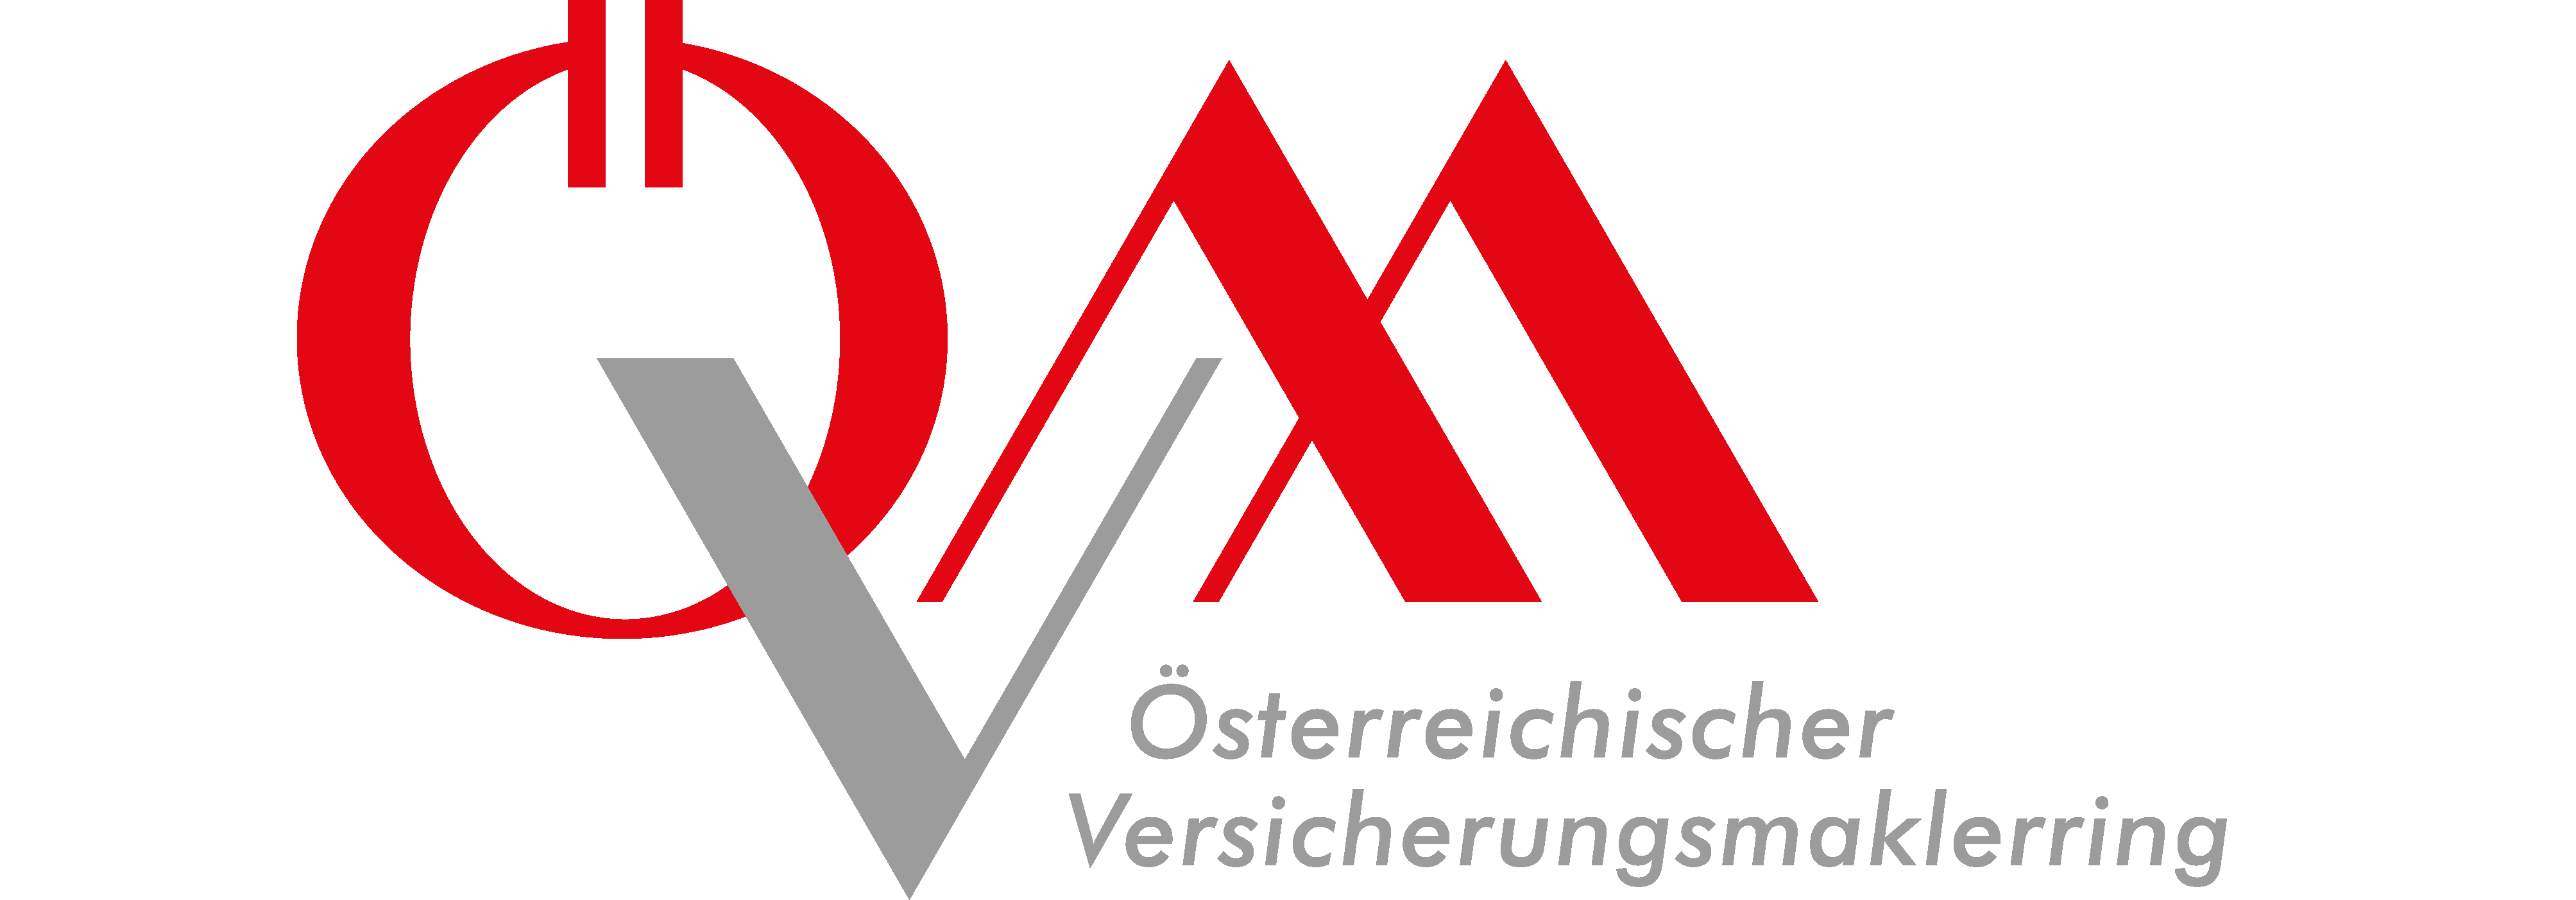 Logo Österreichischer Versicherungsmaklerring